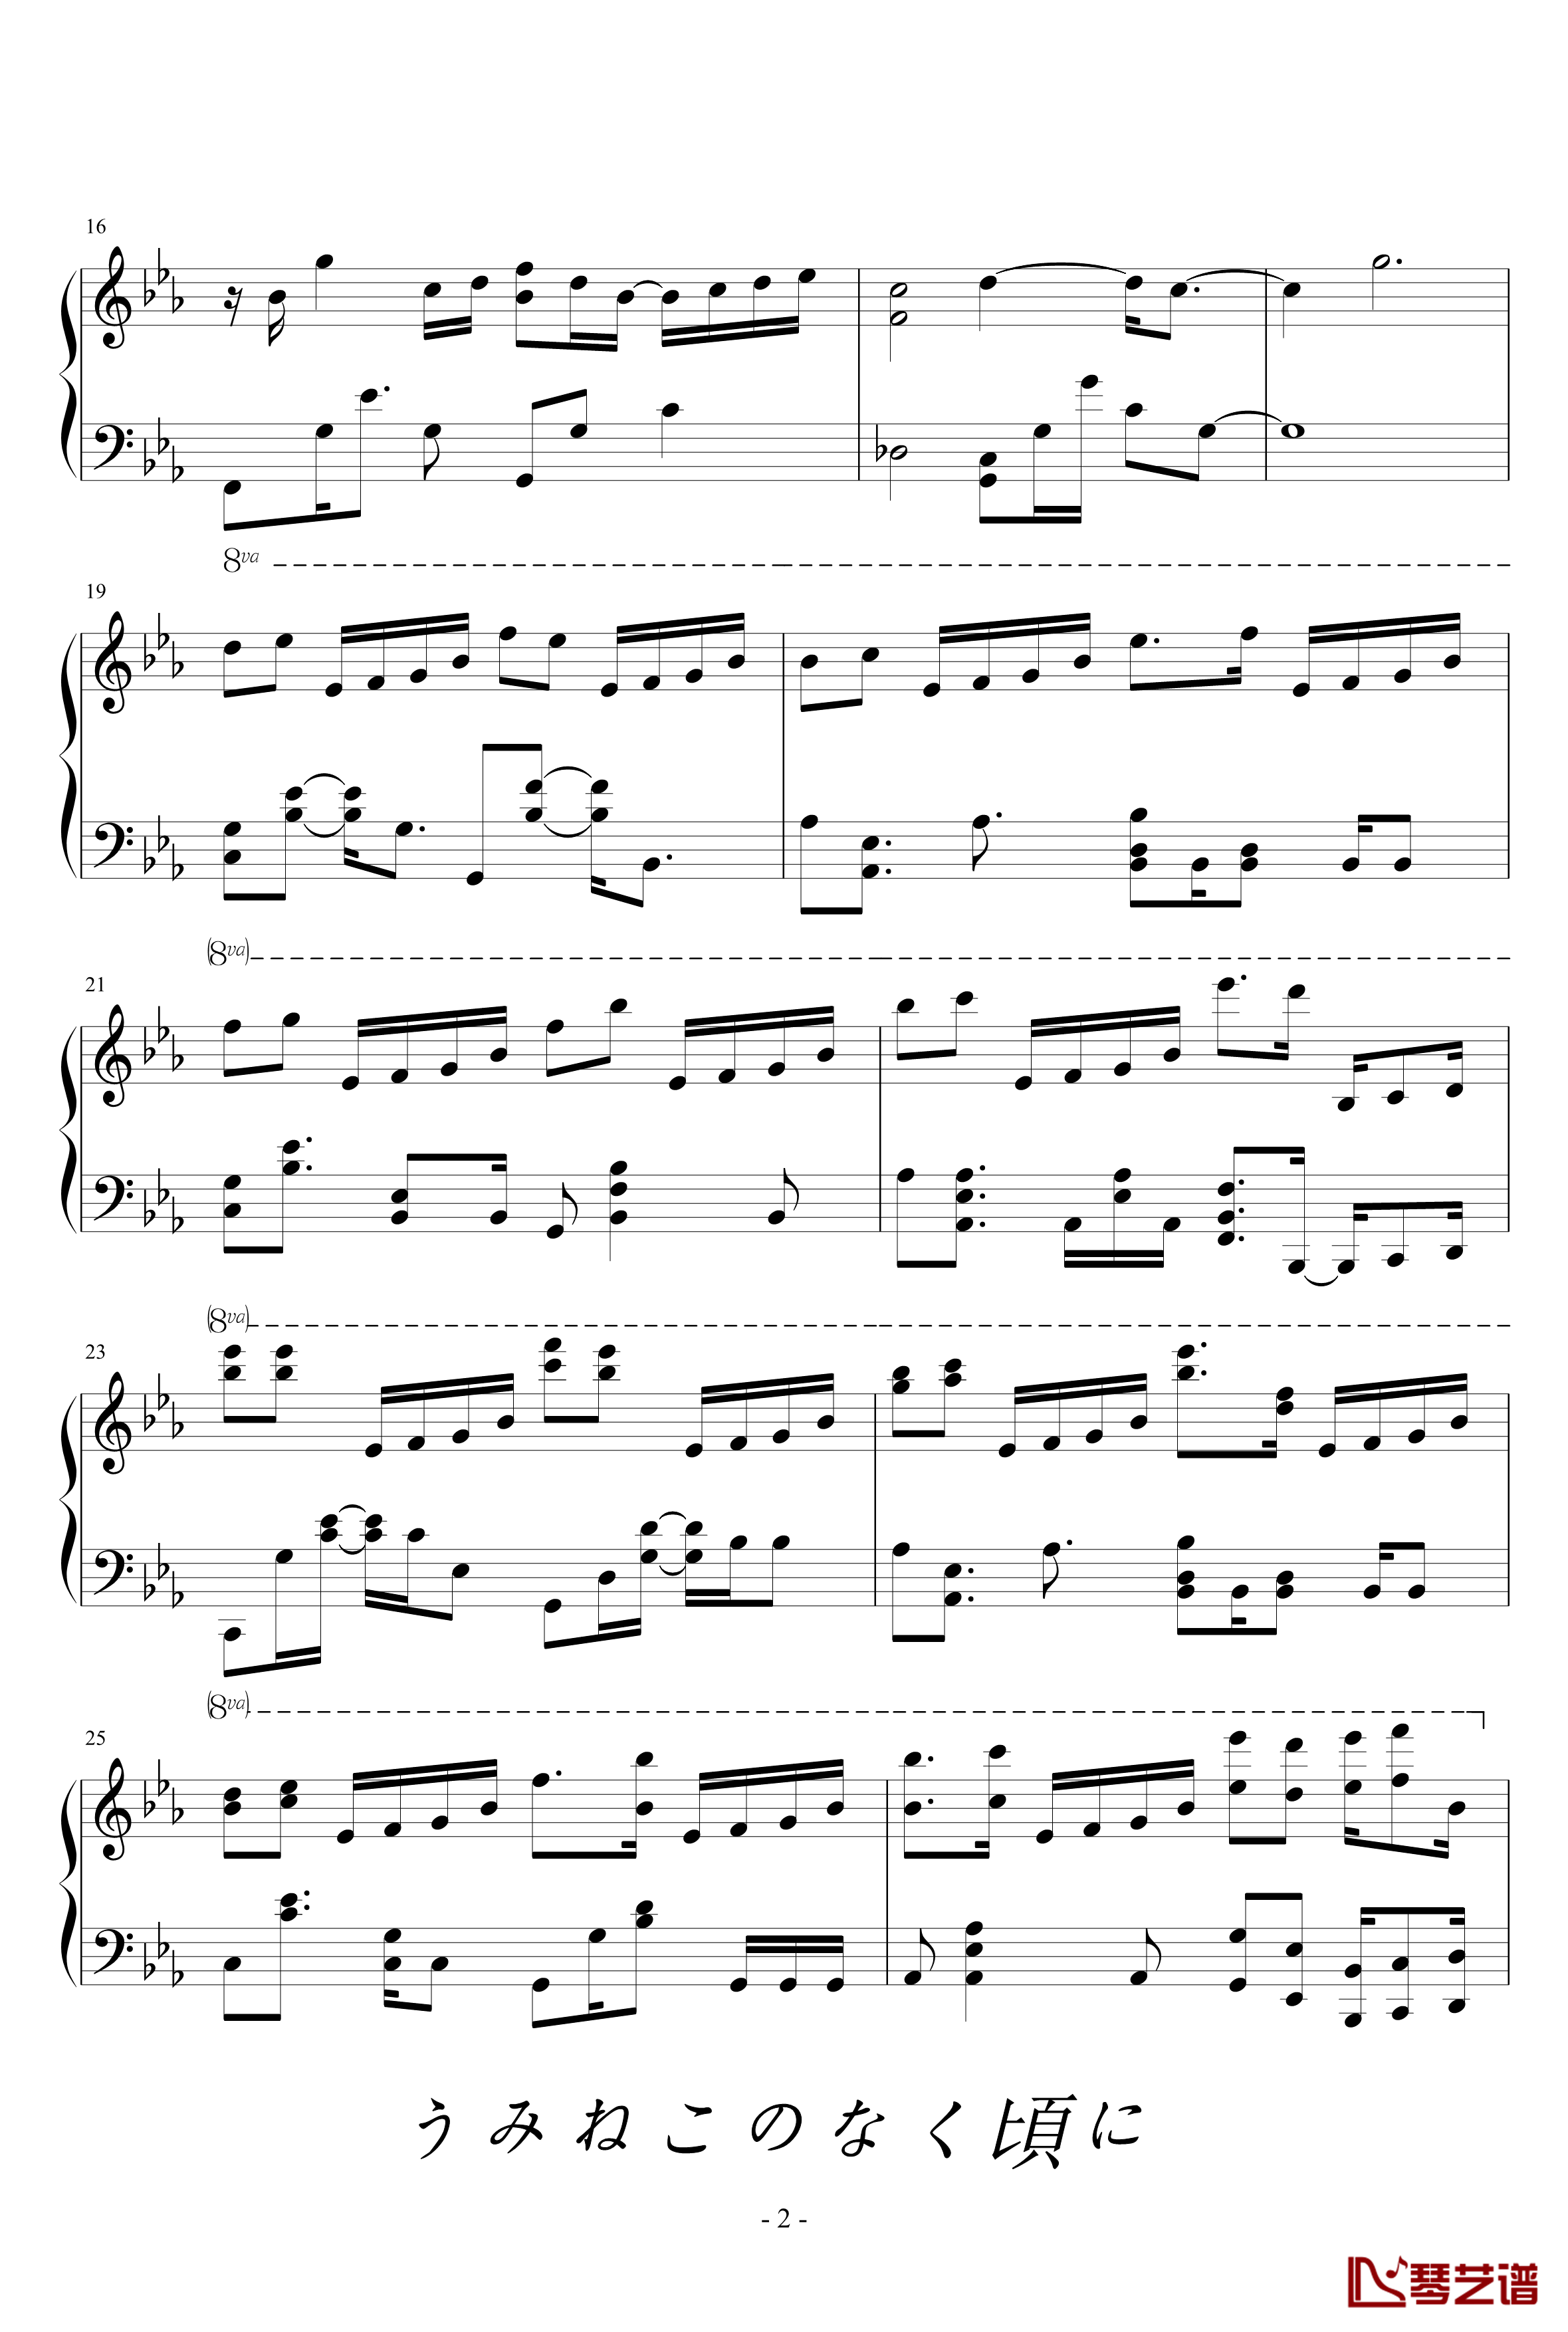 海猫BGM钢琴谱-Answer-海猫鸣泣之时2